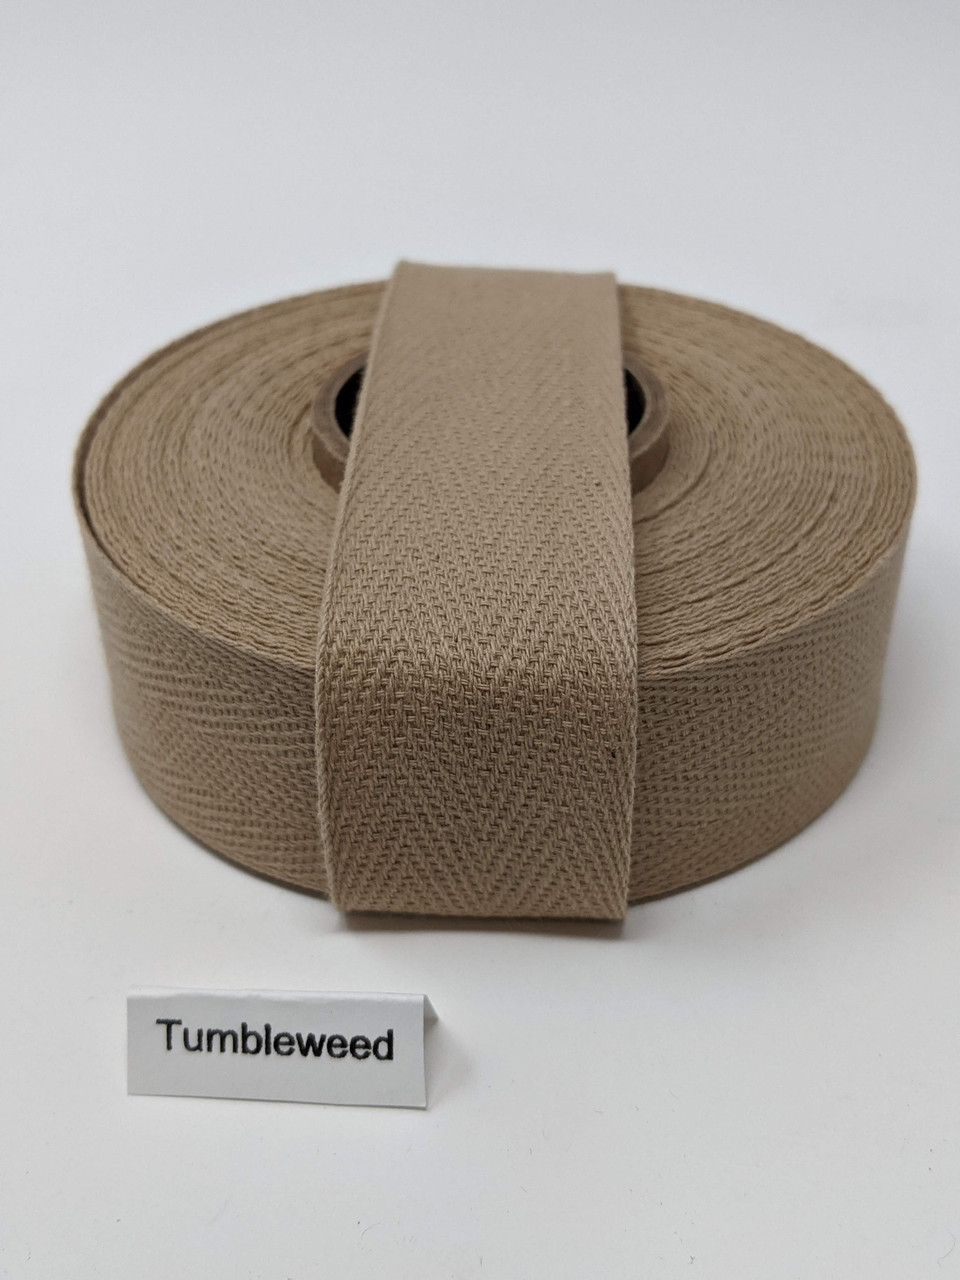 Cotton Twill Tape 1.25 Tumbleweed, 10 yard roll